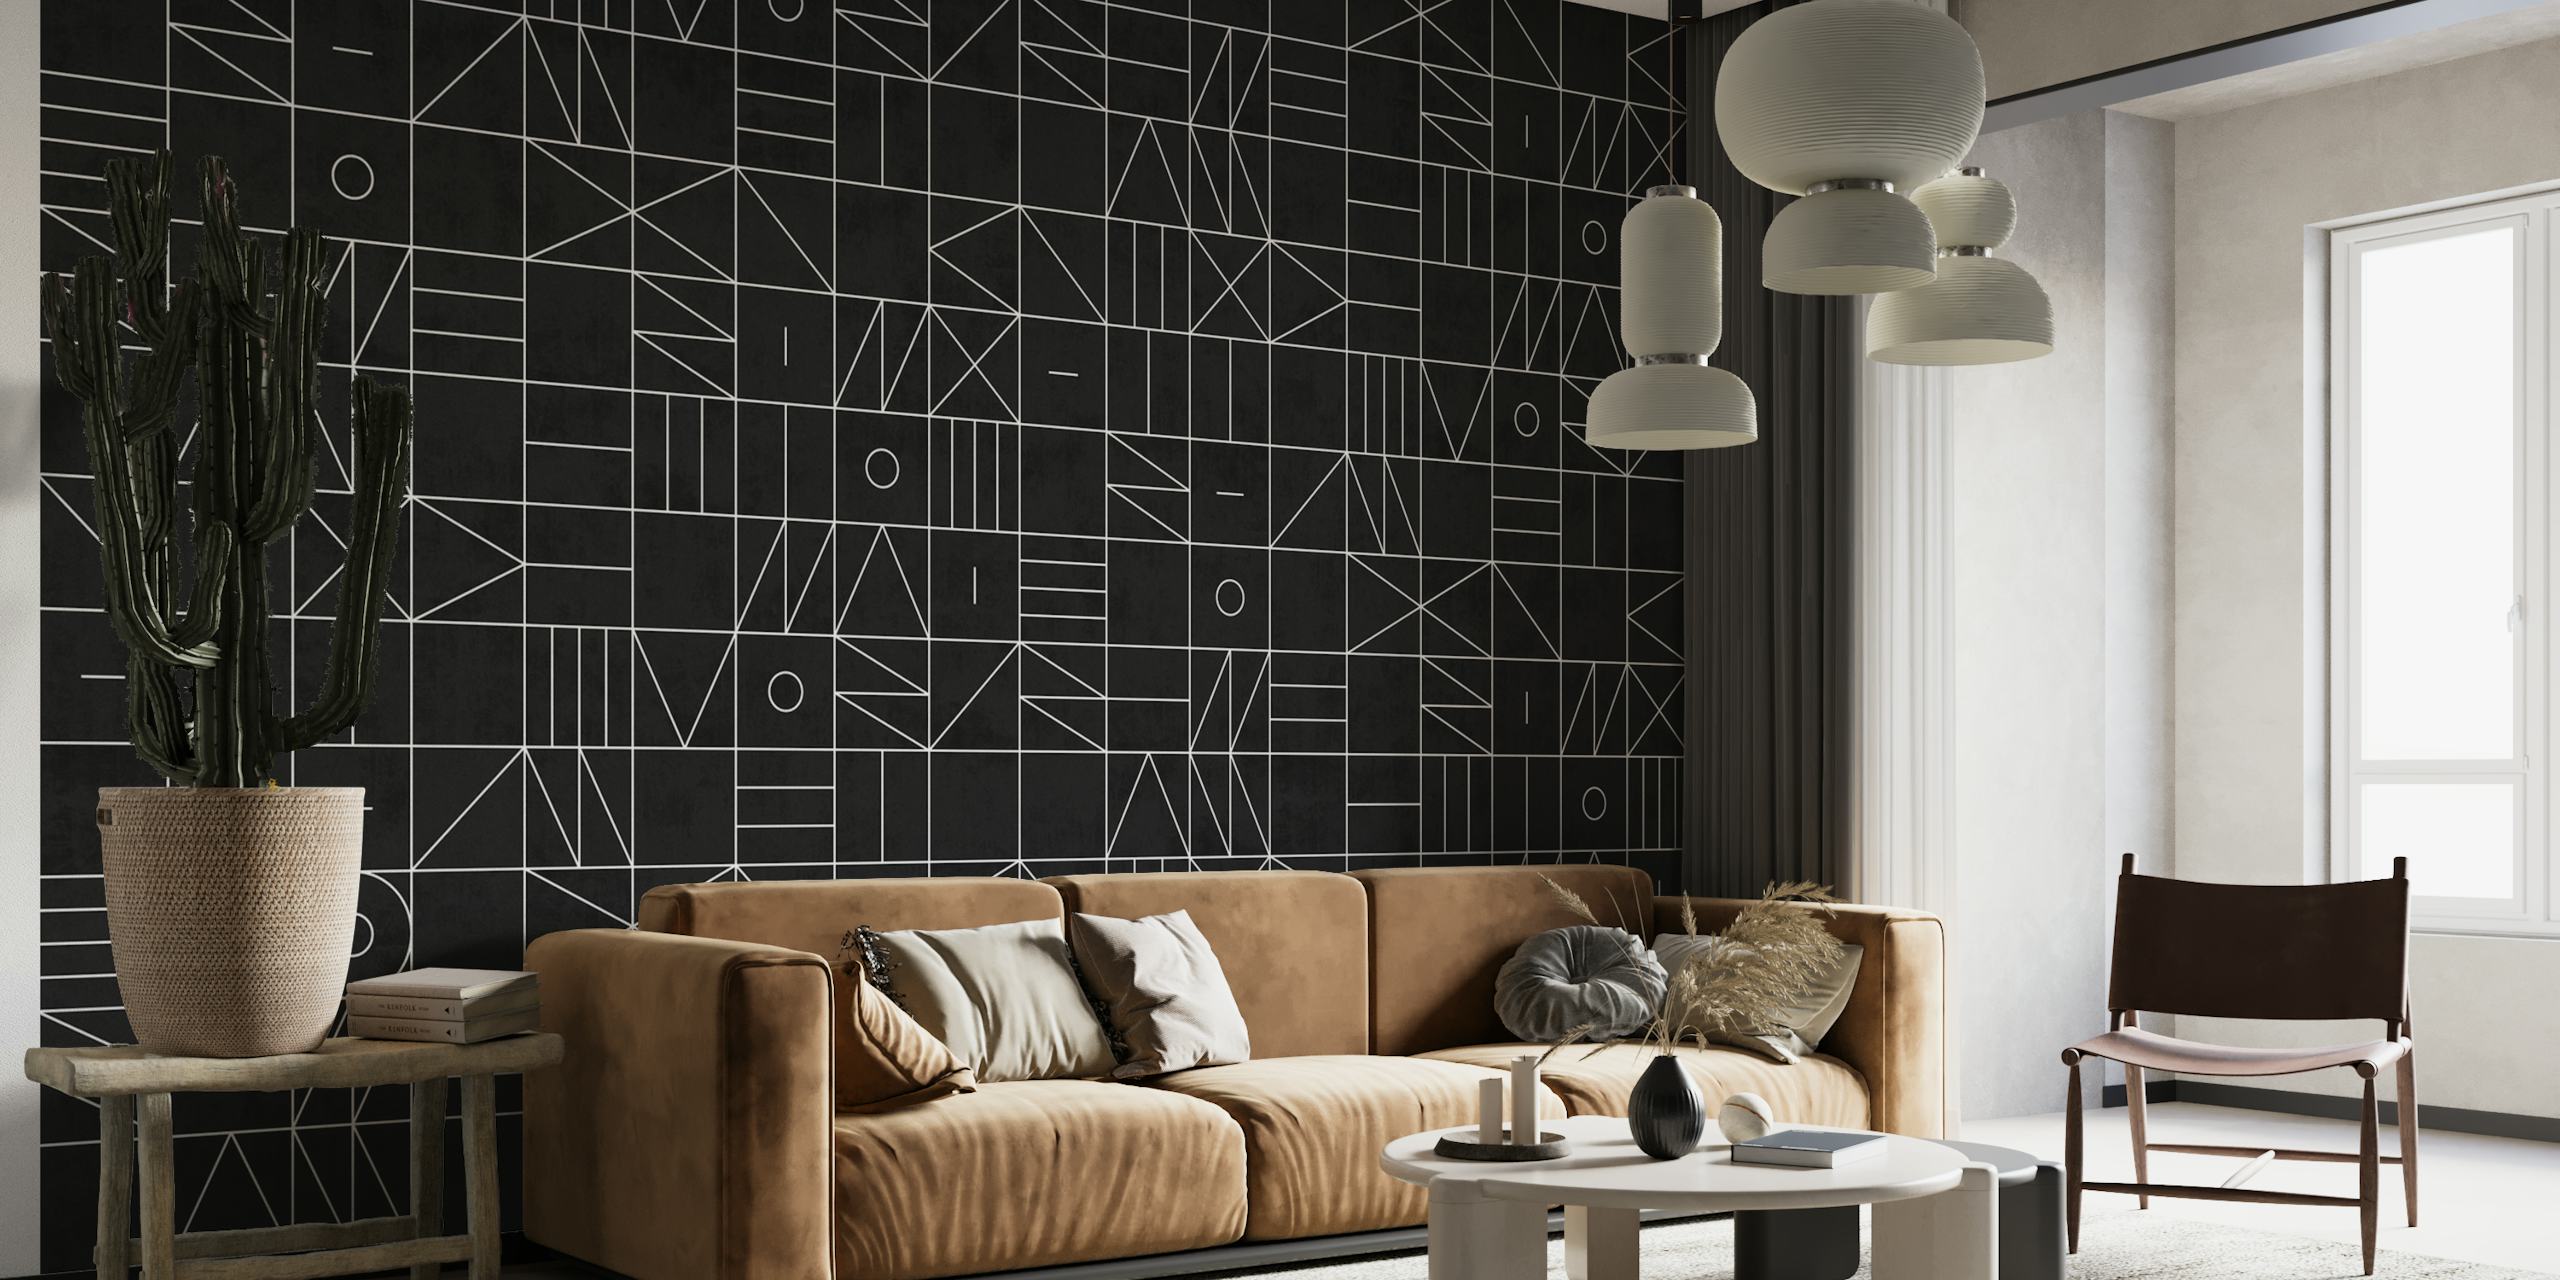 Muurschildering met abstract geometrisch patroon in zwart en wit